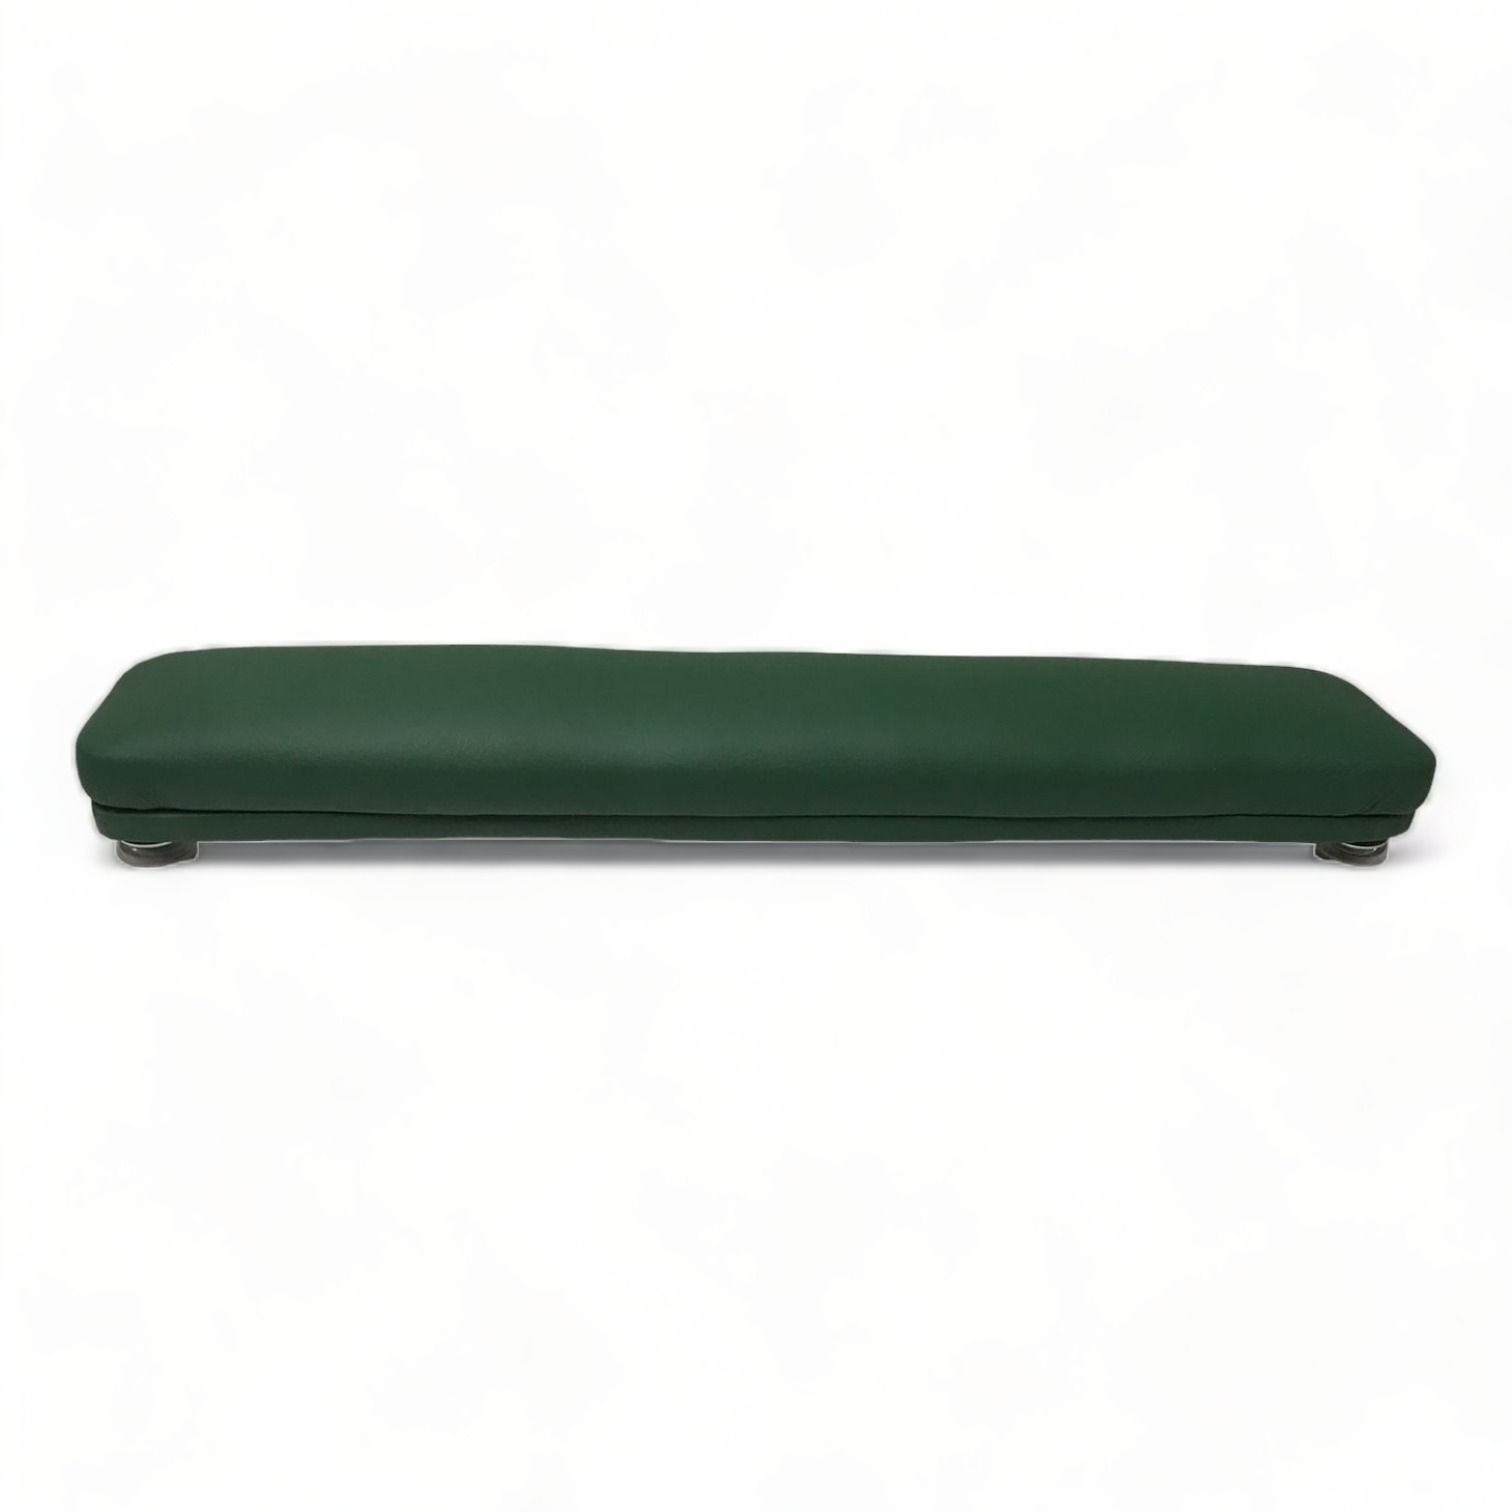 Валик для маникюра Мебель Бьюти Бьюти Зеленый 50 см подставка для чернильницы непроливайки зеленый